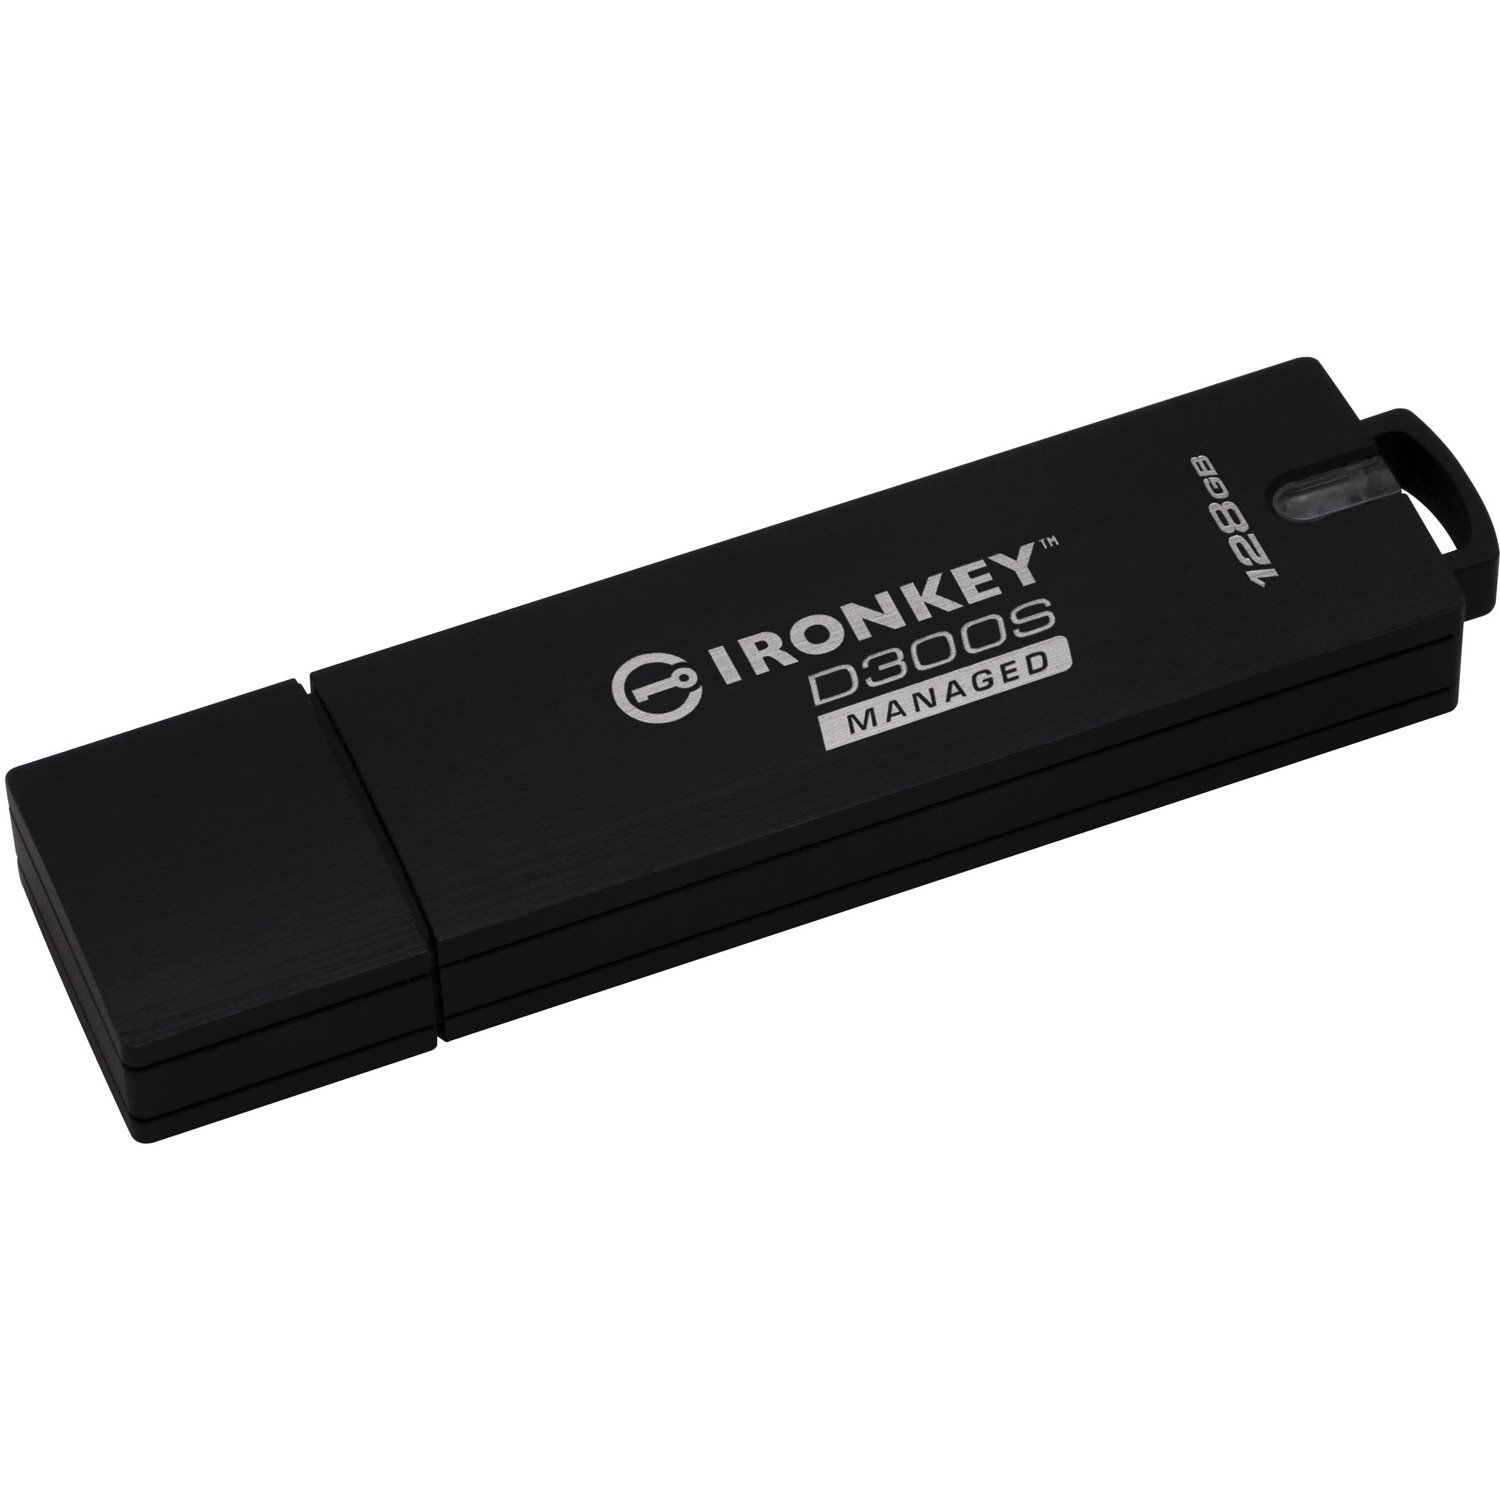 IronKey 128GB D300SM USB 3.1 Flash Drive